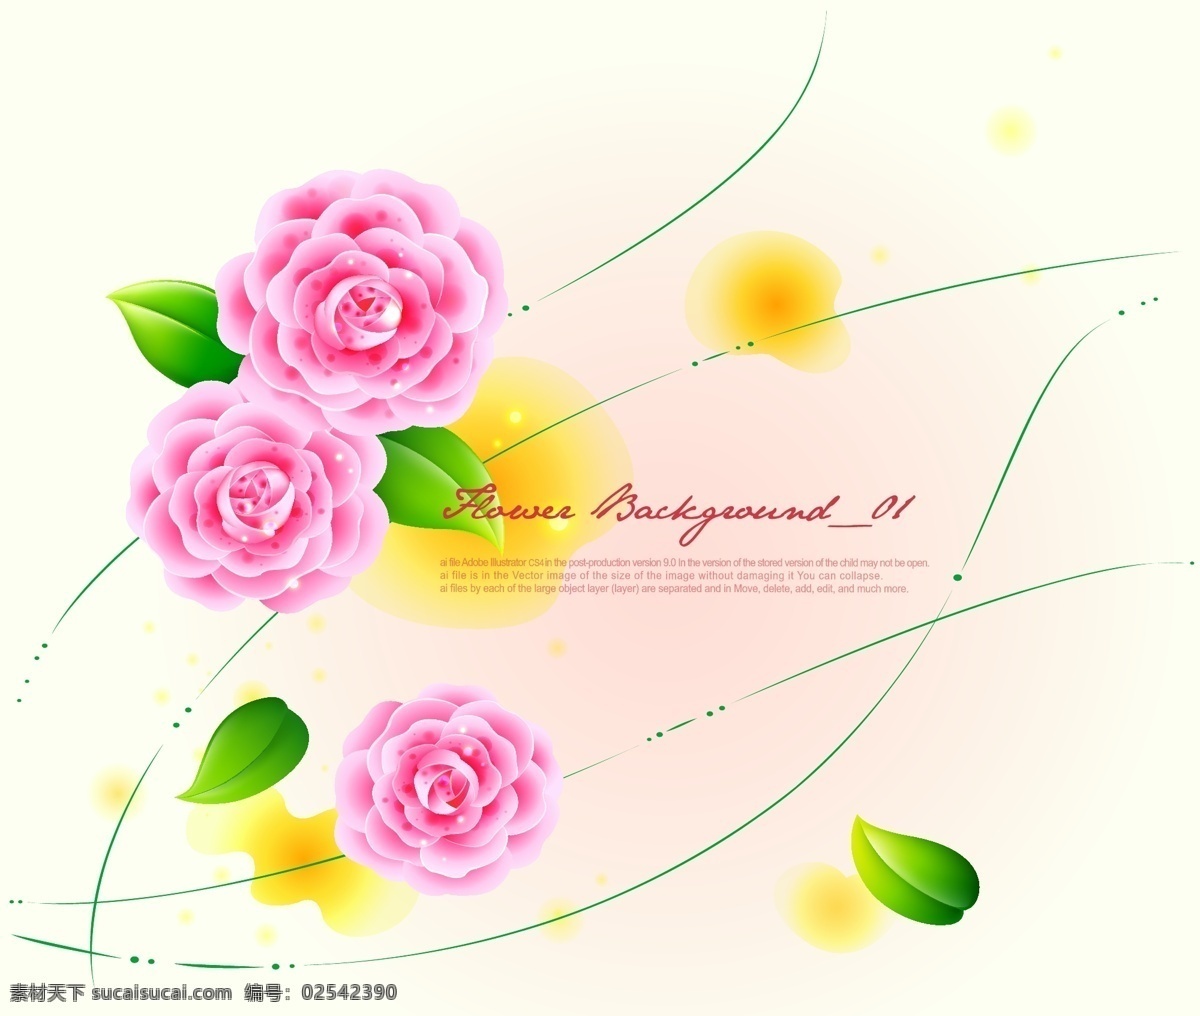 鲜艳 花朵 绿叶 图案 创意设计 矢量 粉色花卉 模板 设计稿 矢量素材 素材元素 唯美花朵 浪漫花卉 绿叶叶片 鲜艳花朵 源文件 矢量图